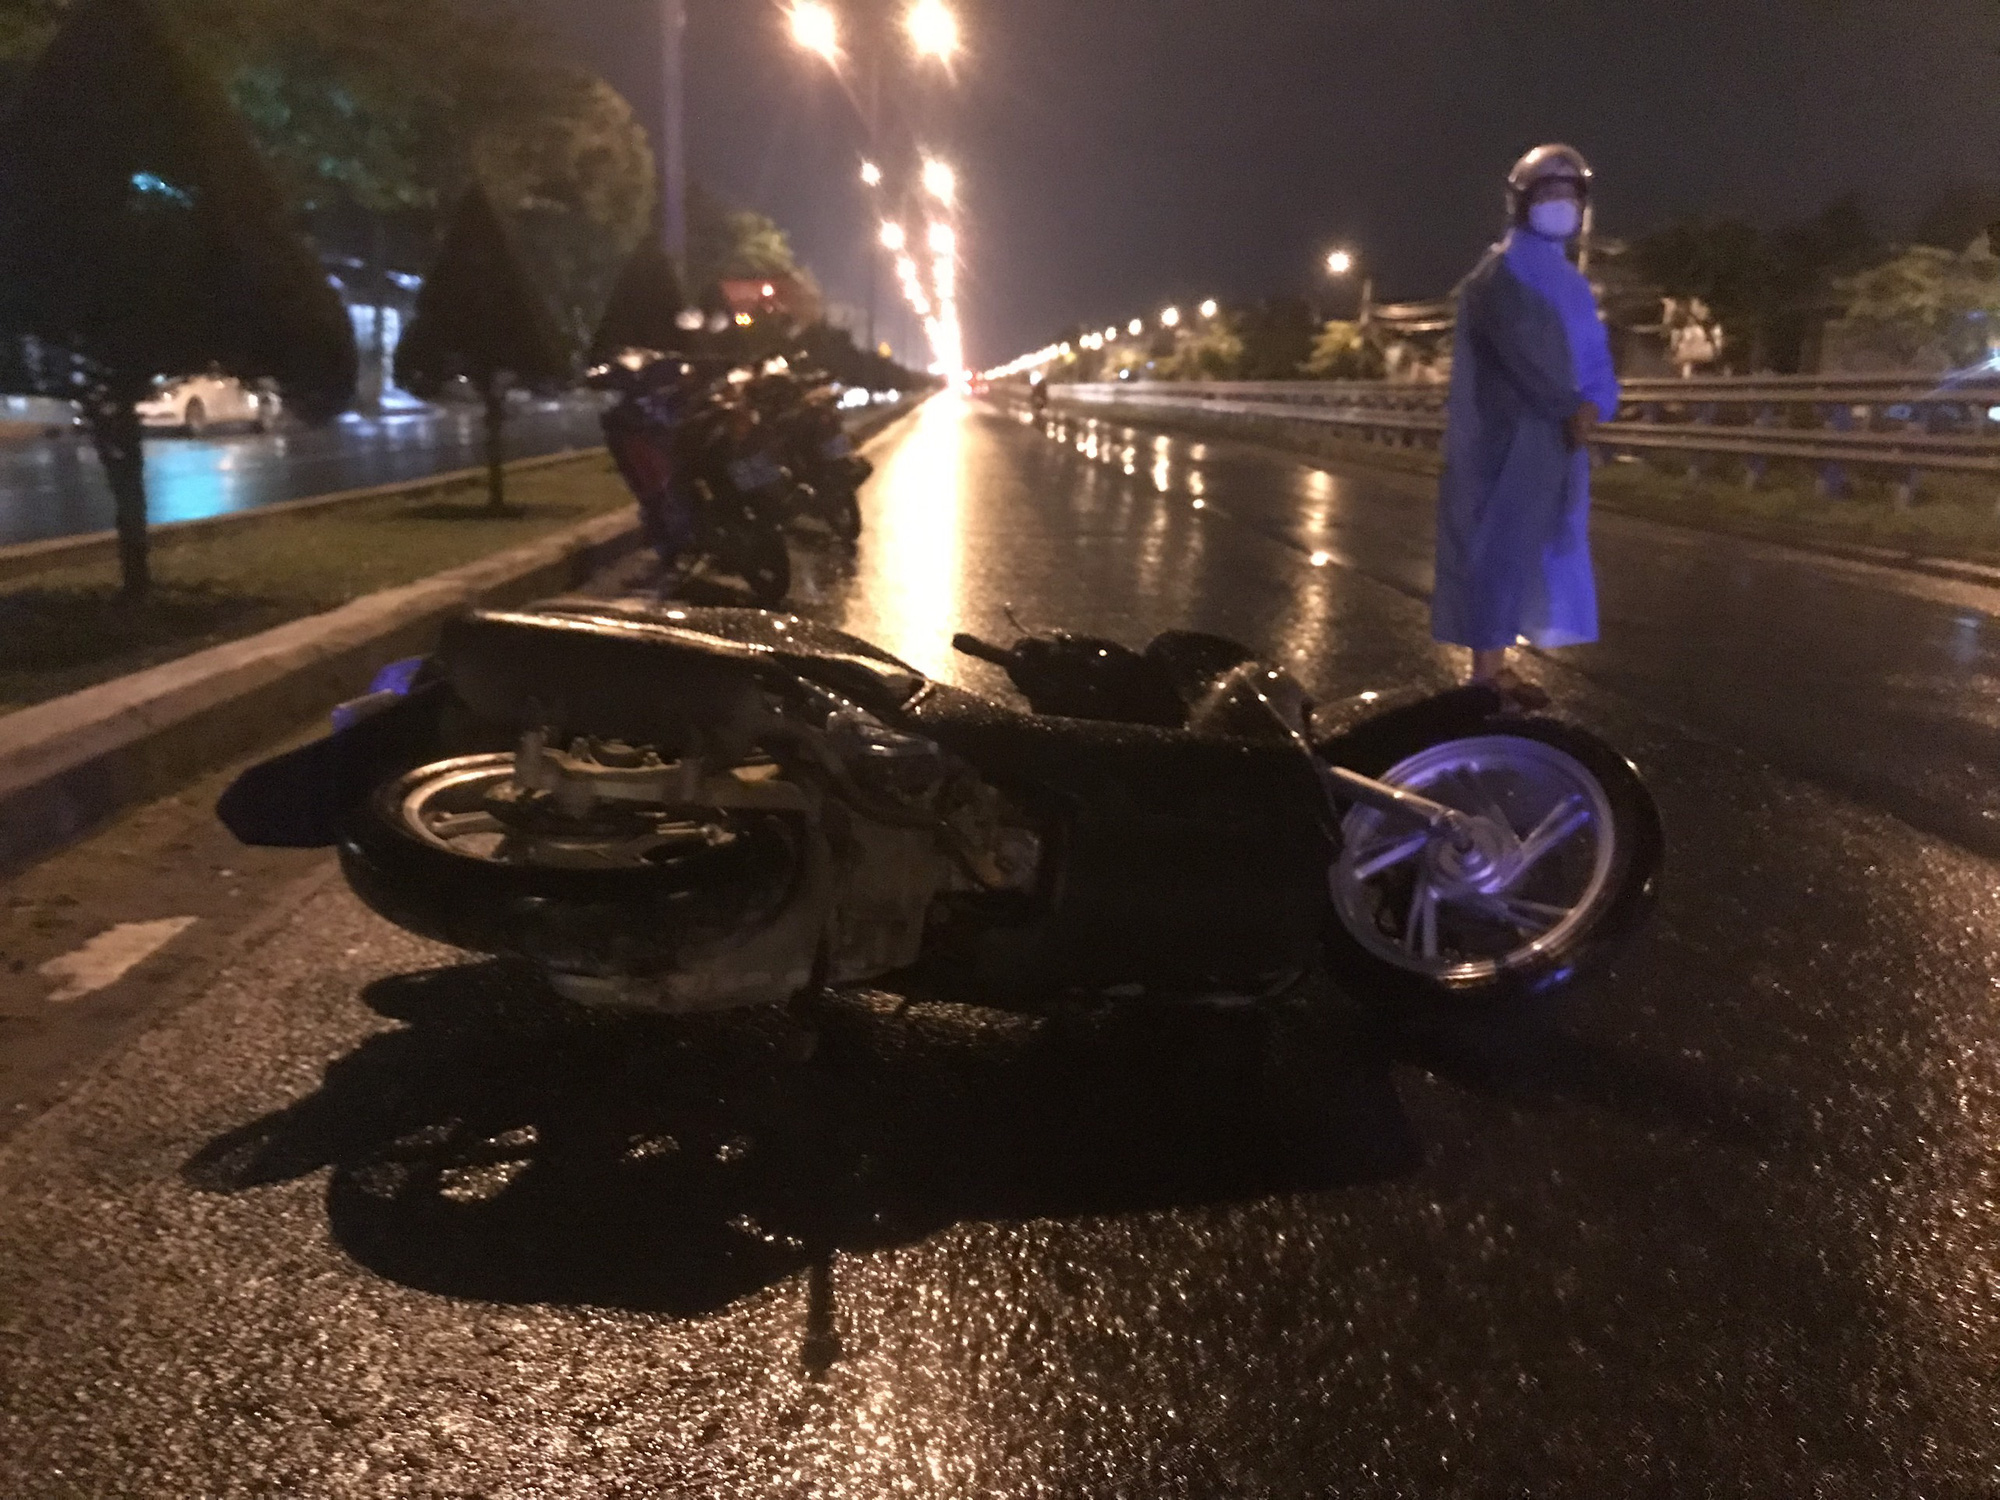 Thanh niên 21 tuổi chết cạnh xe máy giữa đường trong đêm mưa - Ảnh 1.